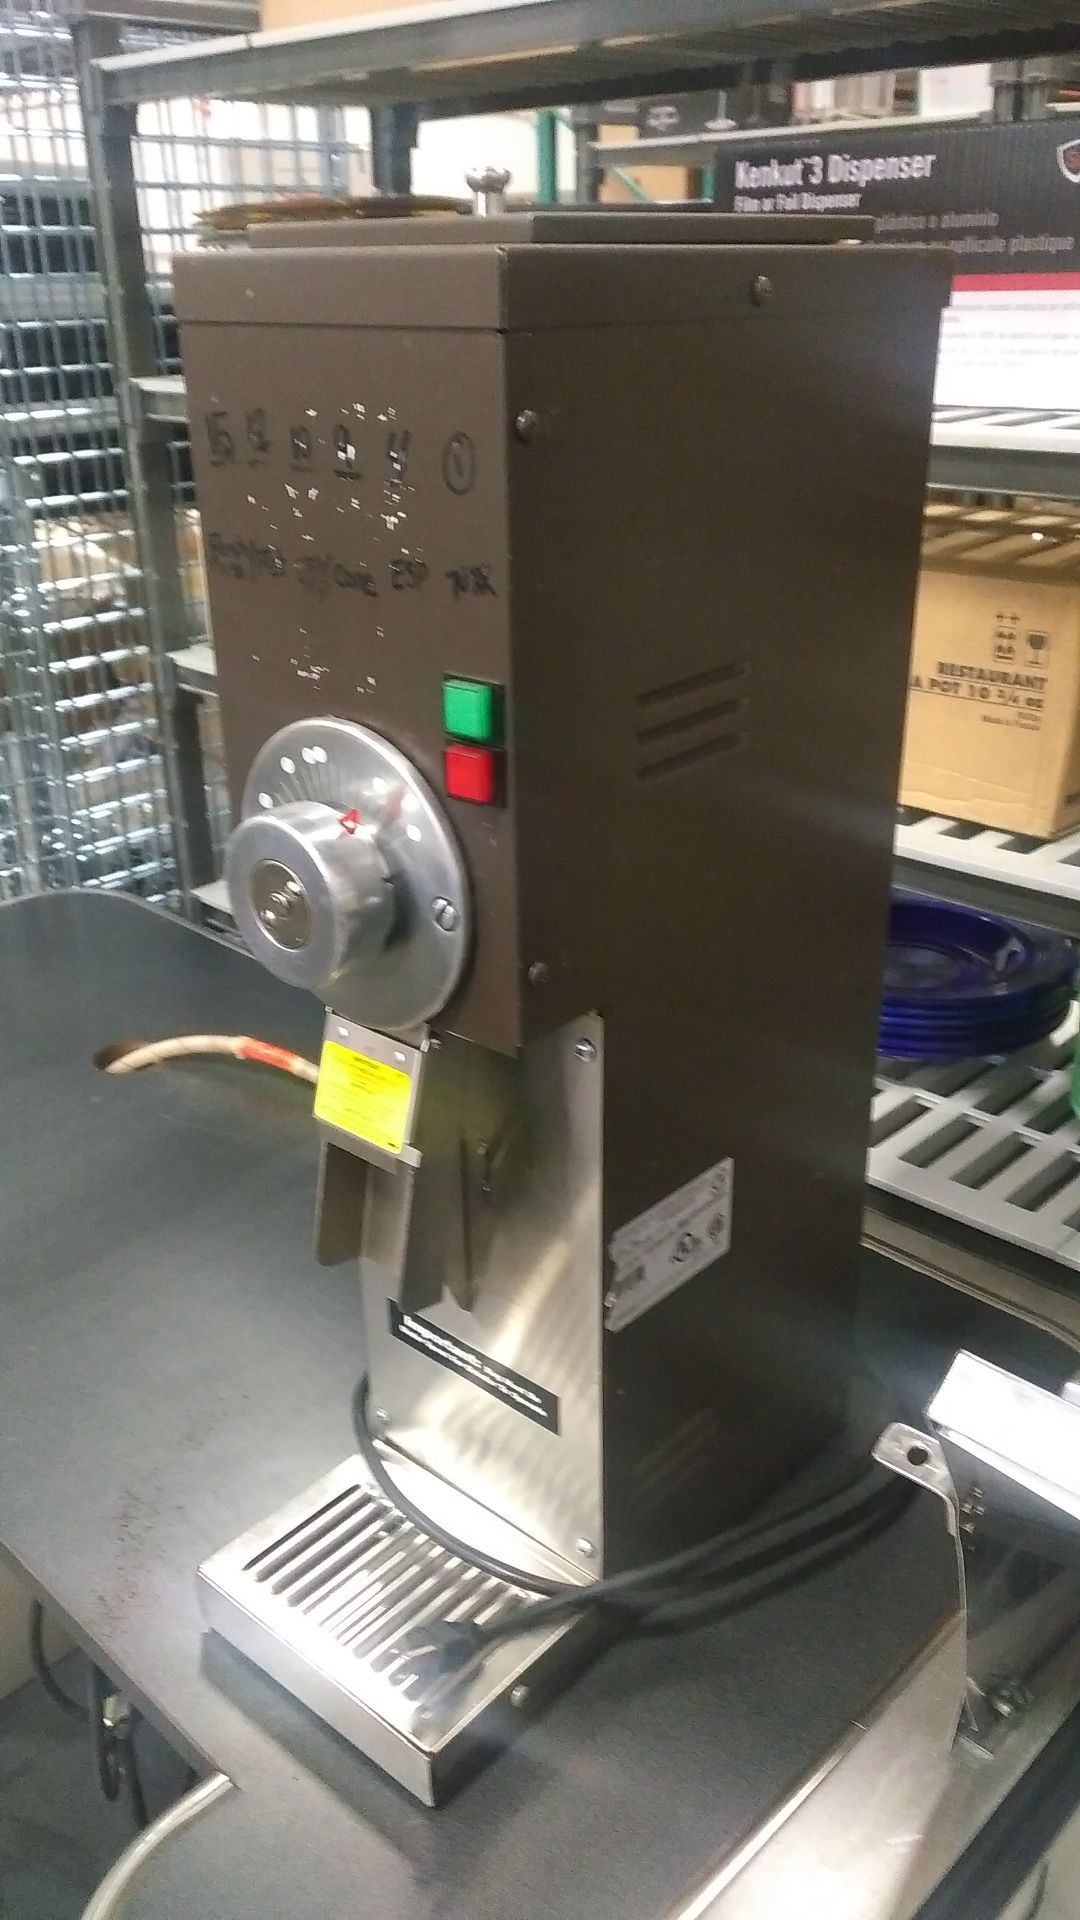 Grindmaster 890 5lb Coffee Grinder 120v, tested/working - Image 2 of 3